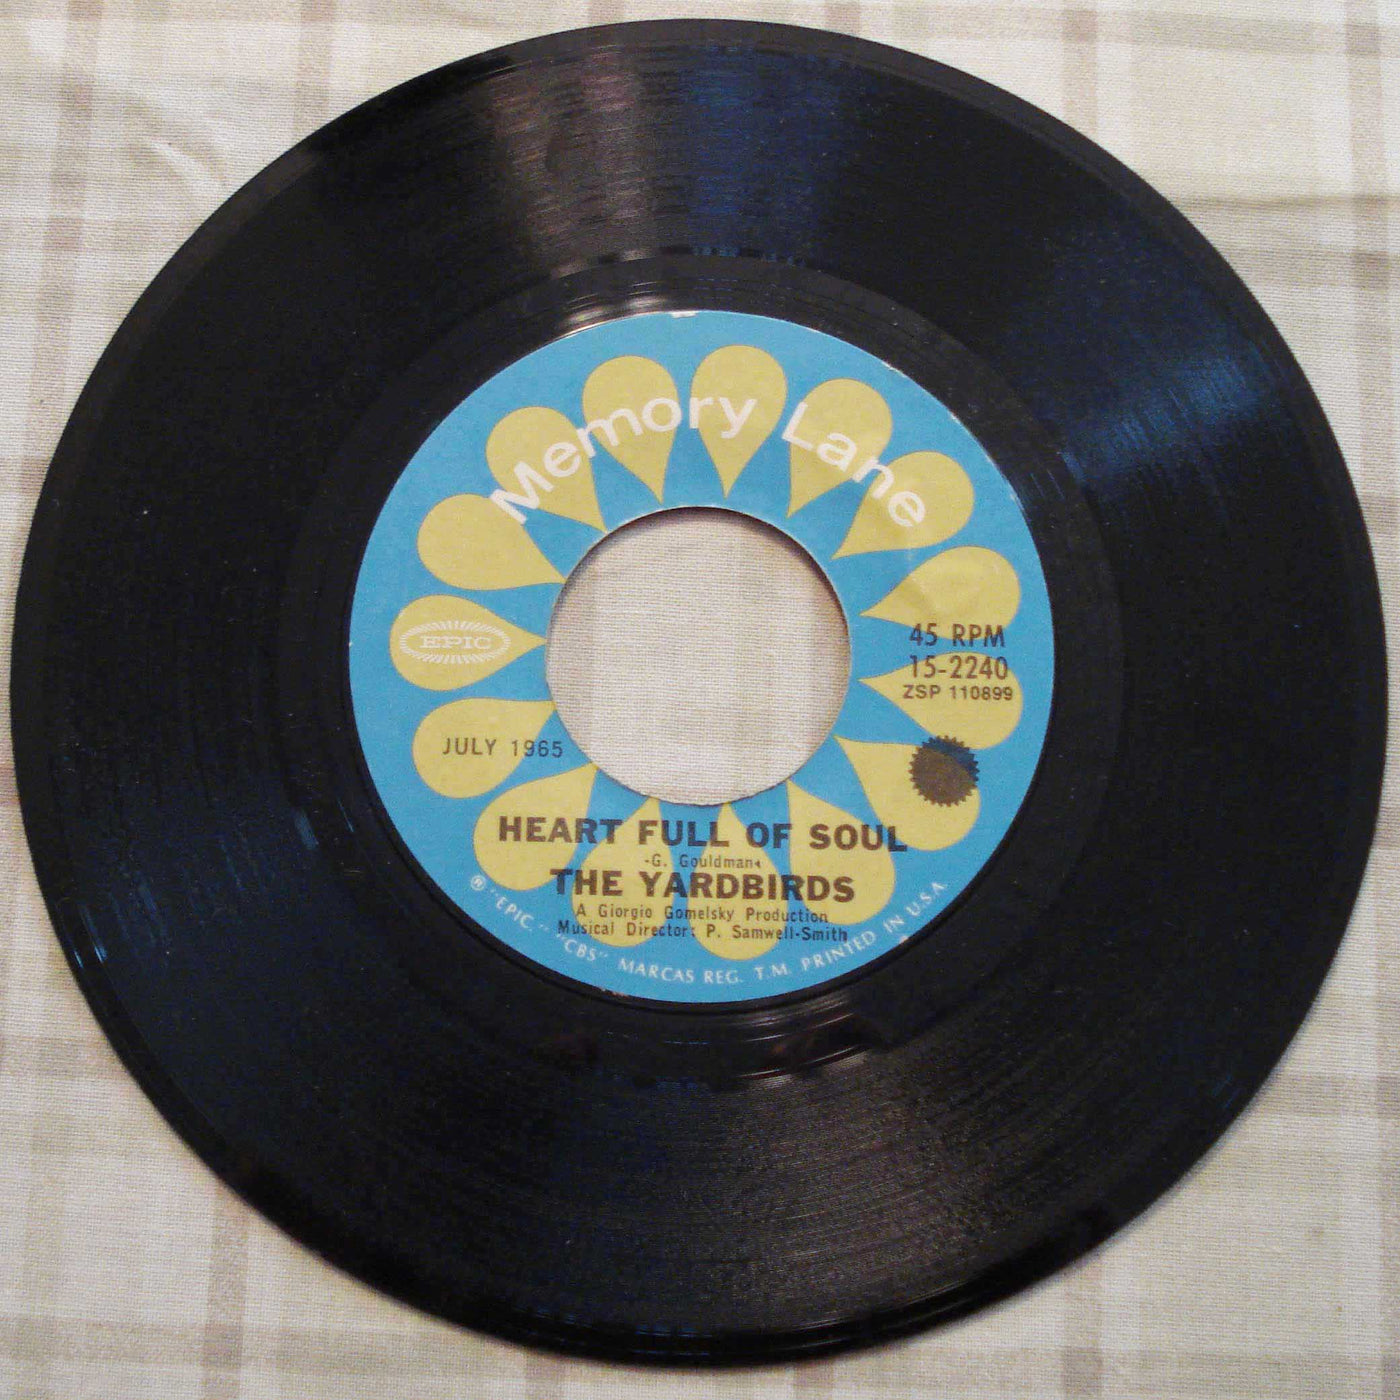 The Yardbirds - Heart Full Of Soul-For Your Love (1965) Vinyl Single 45rpm 15-2240